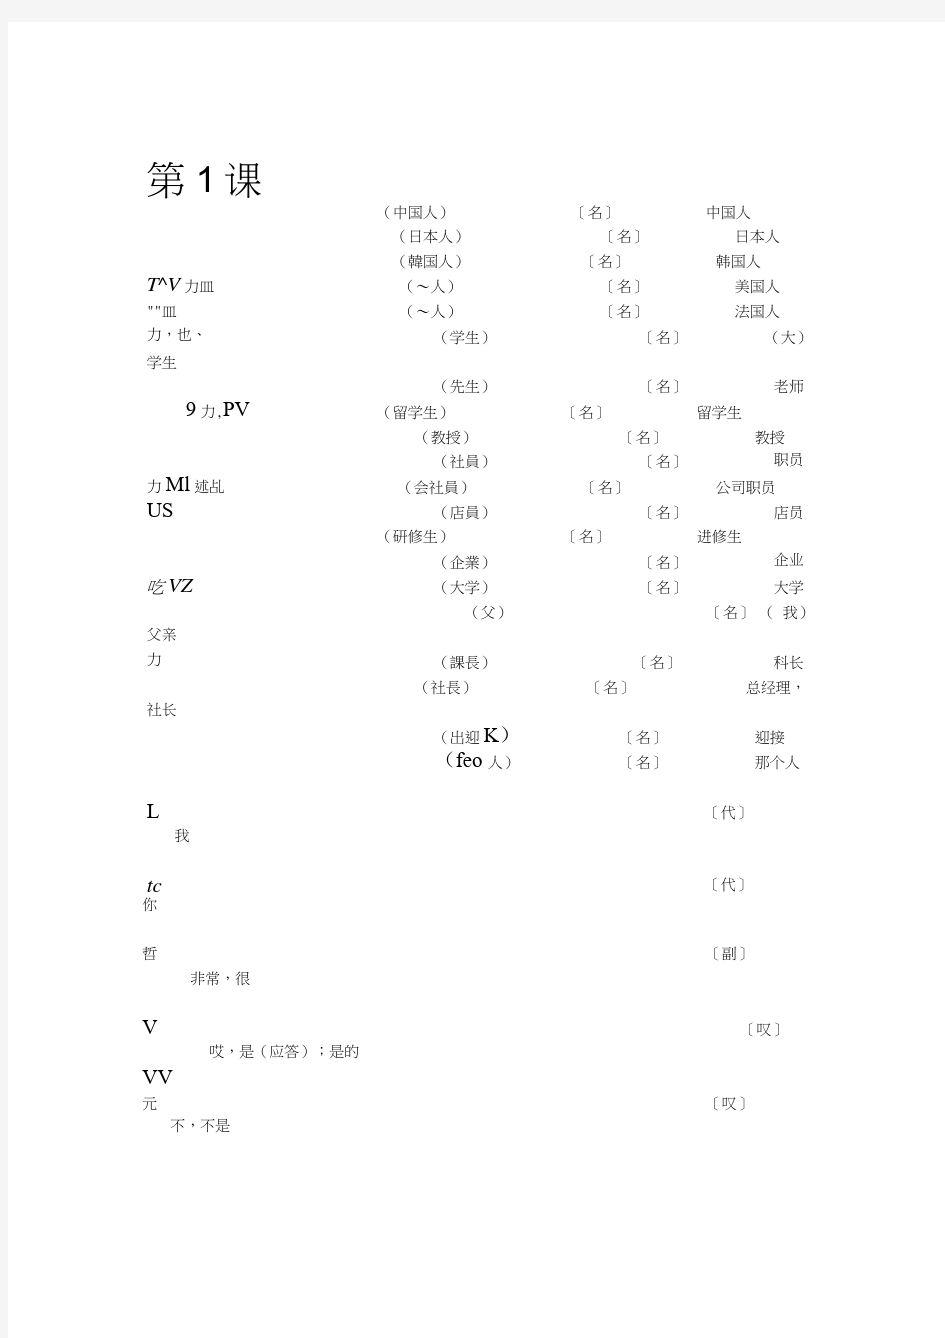 新版中日交流标准日本语初级单词背诵本(全)